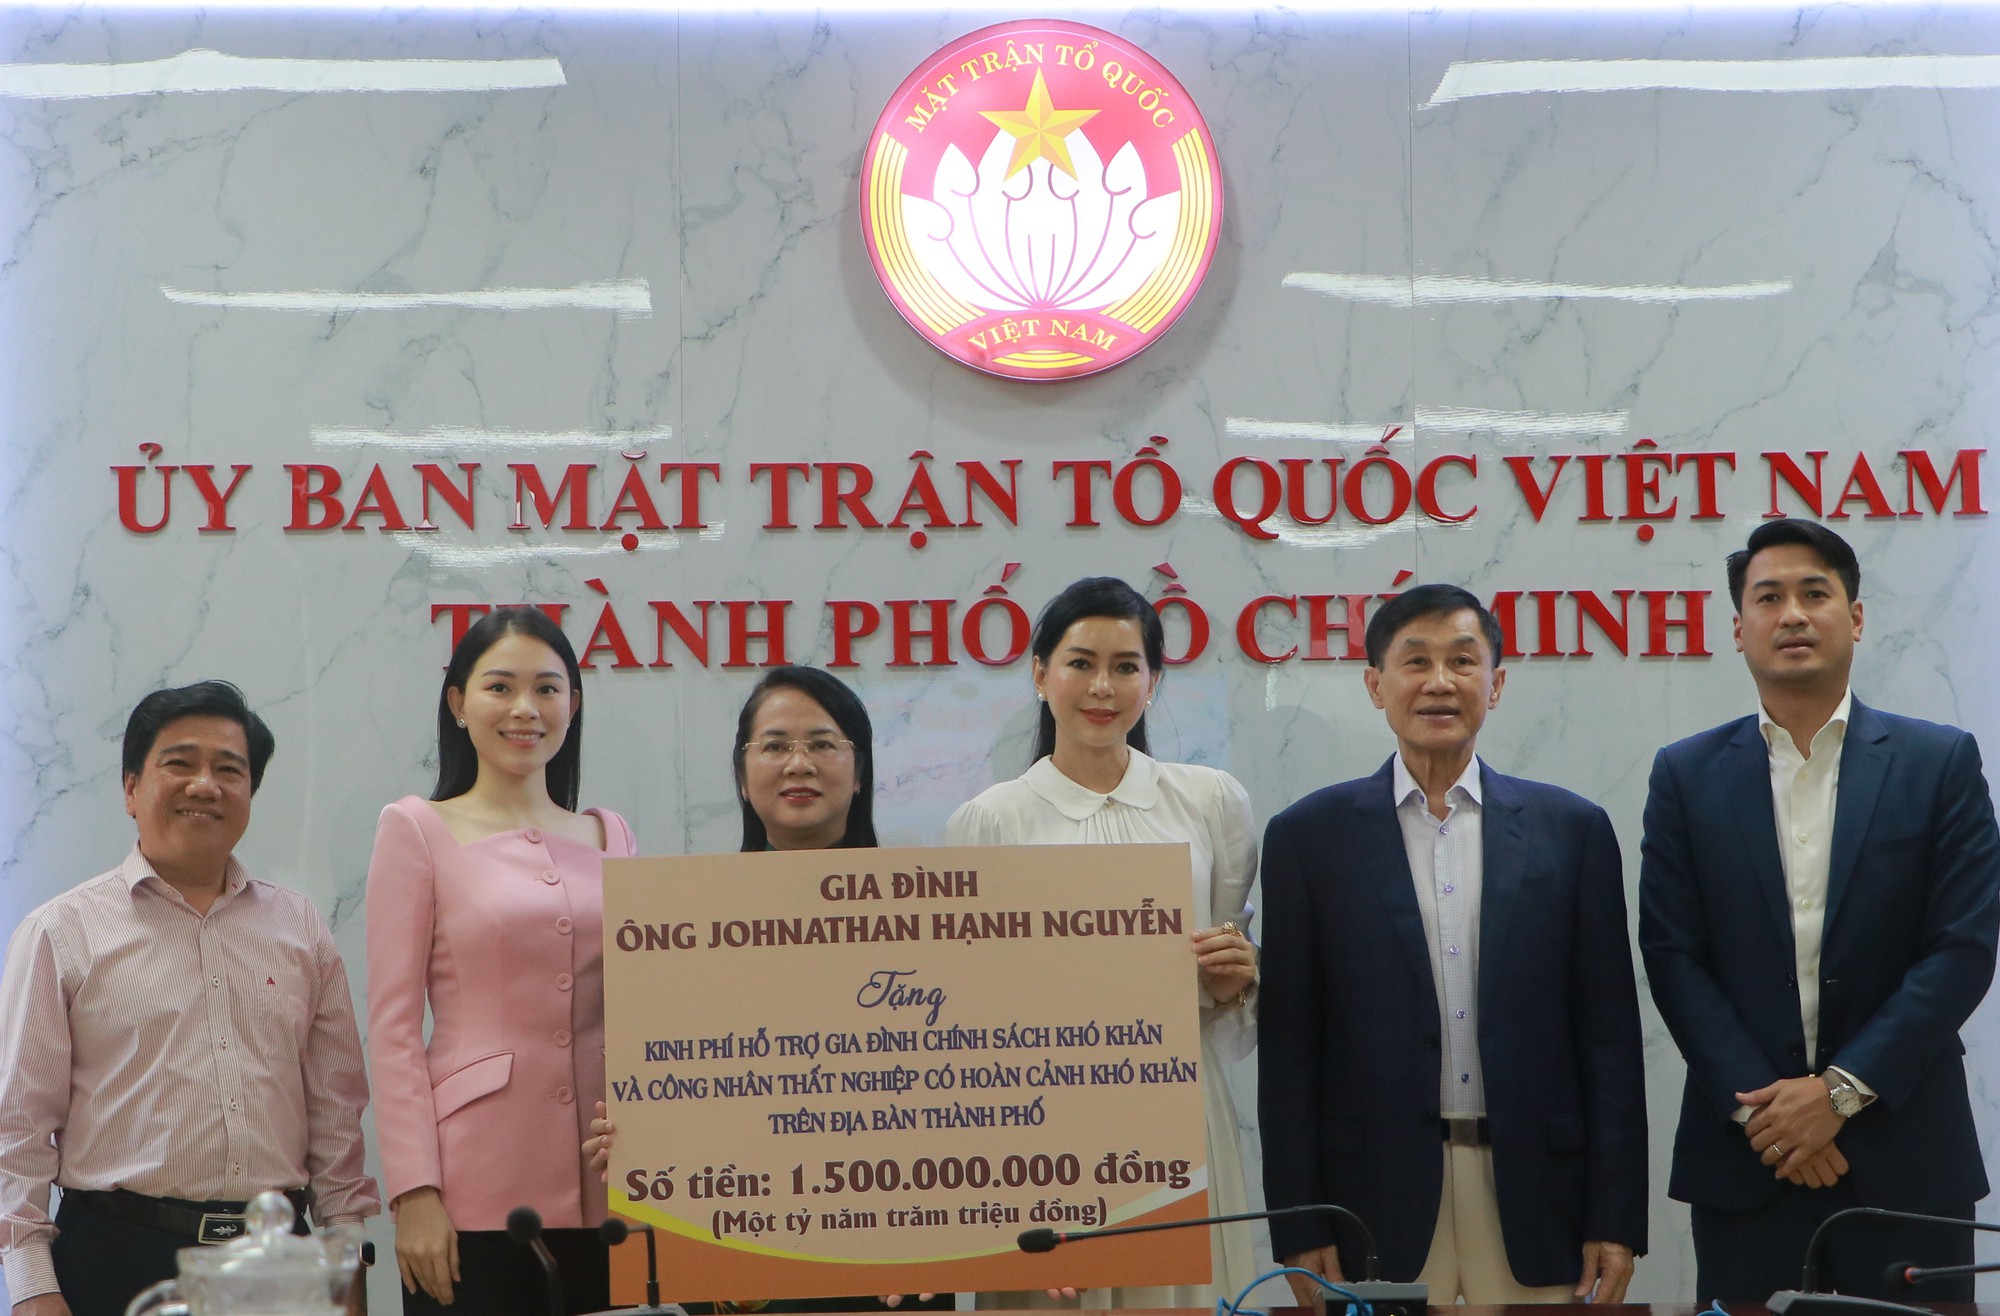 Hoãn đám cưới tại Việt Nam, gia đình ông Johnathan Hạnh Nguyễn ủng hộ 1,5 tỷ đồng cho MTTQ TP.HCM - Ảnh 1.